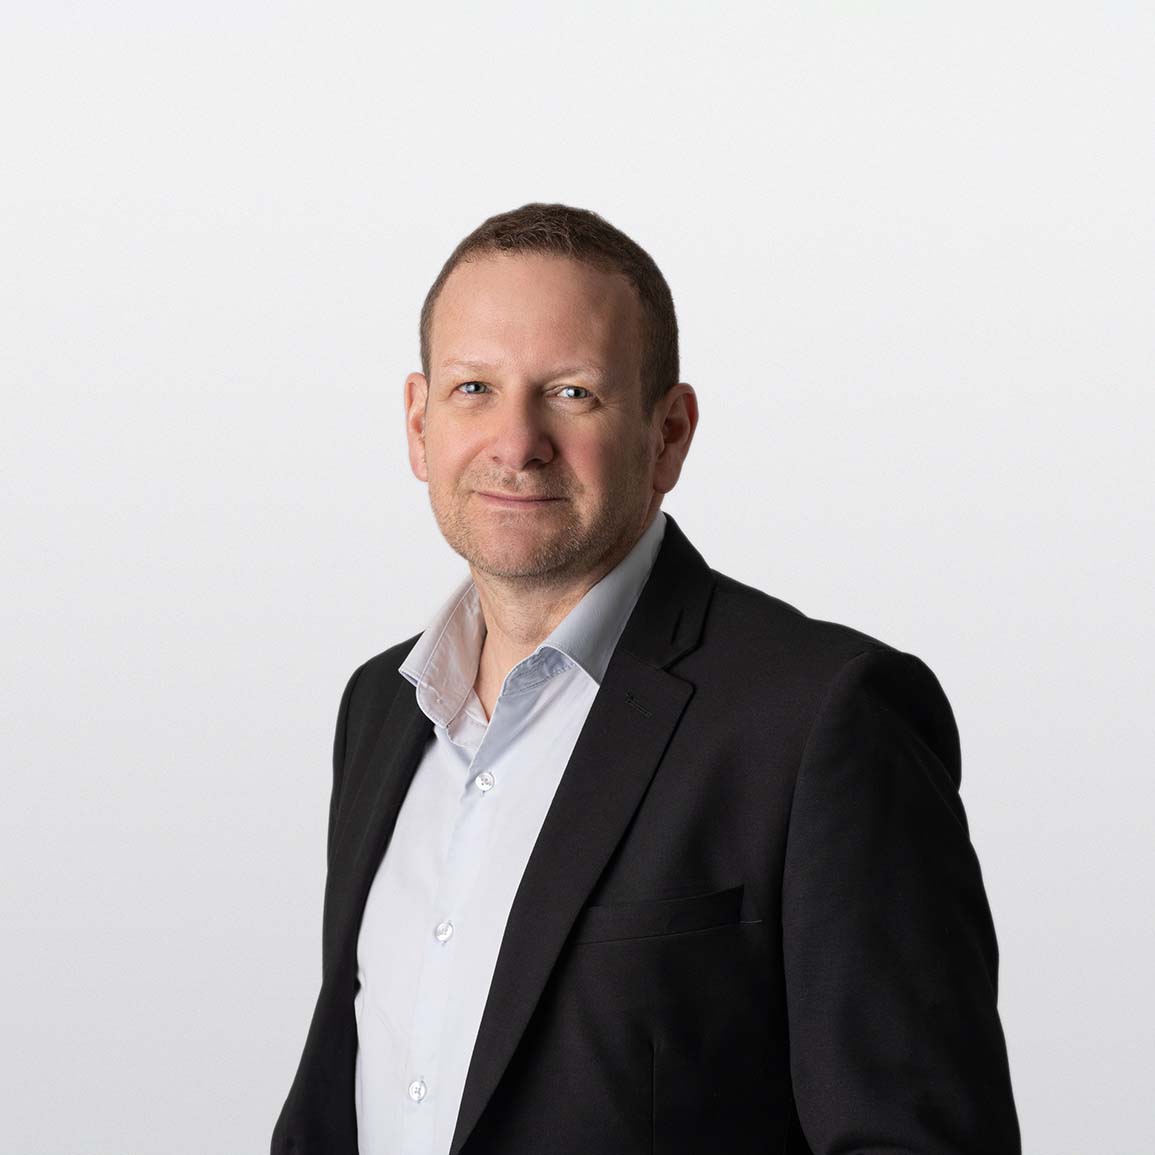 Image of Rob Enns, Senior Financial Advisor, on white background